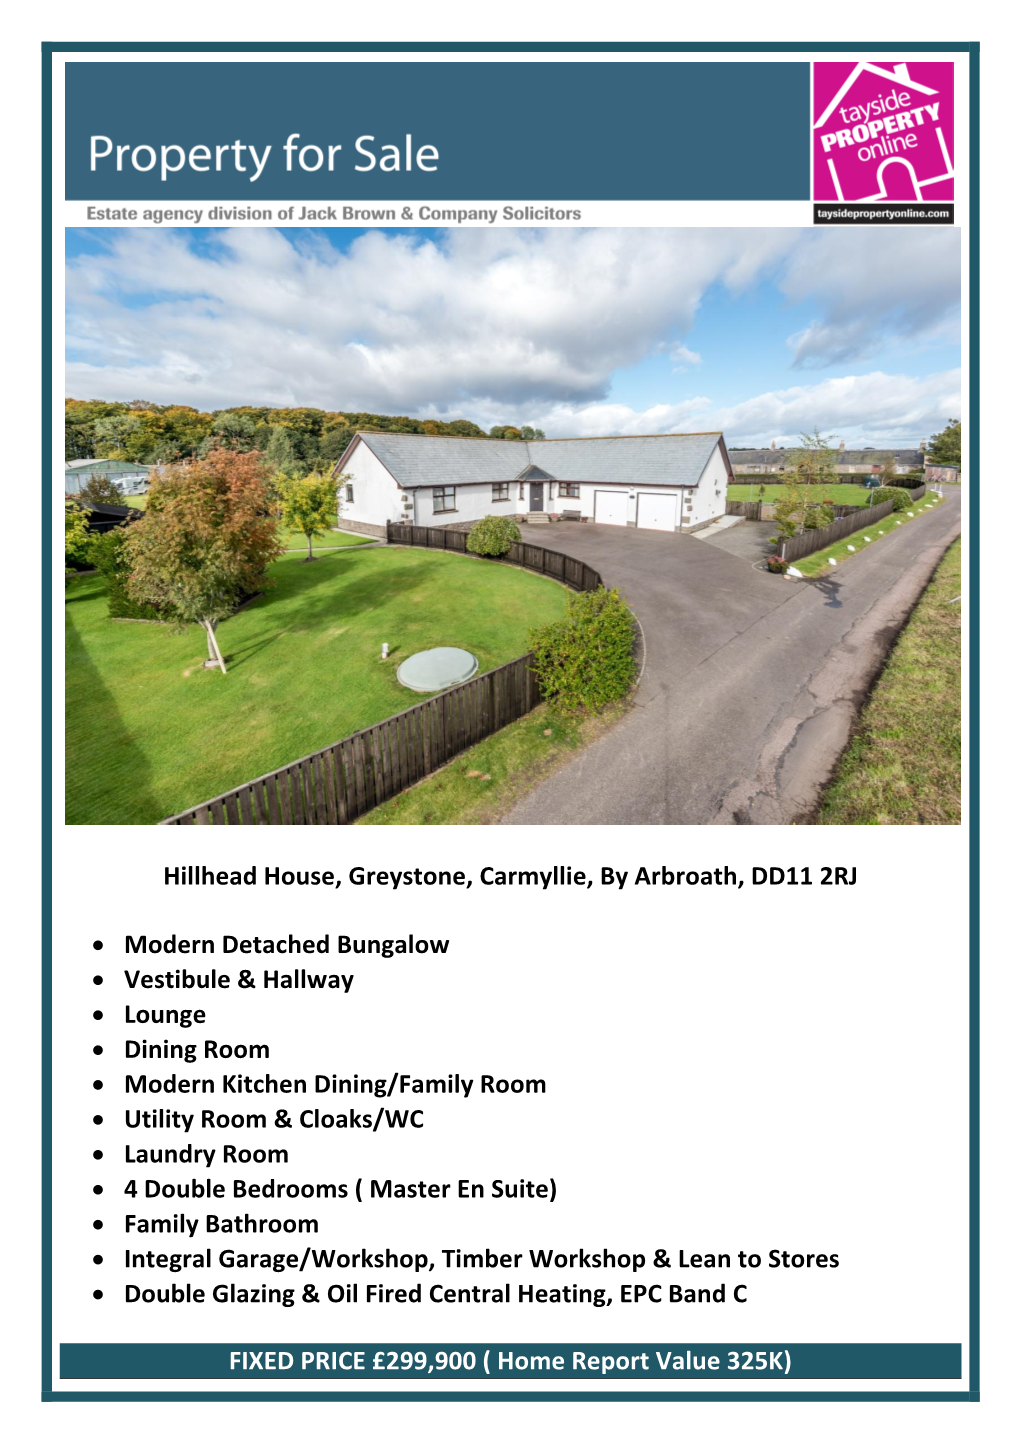 Hillhead House, Greystone, Carmyllie, by Arbroath, DD11 2RJ